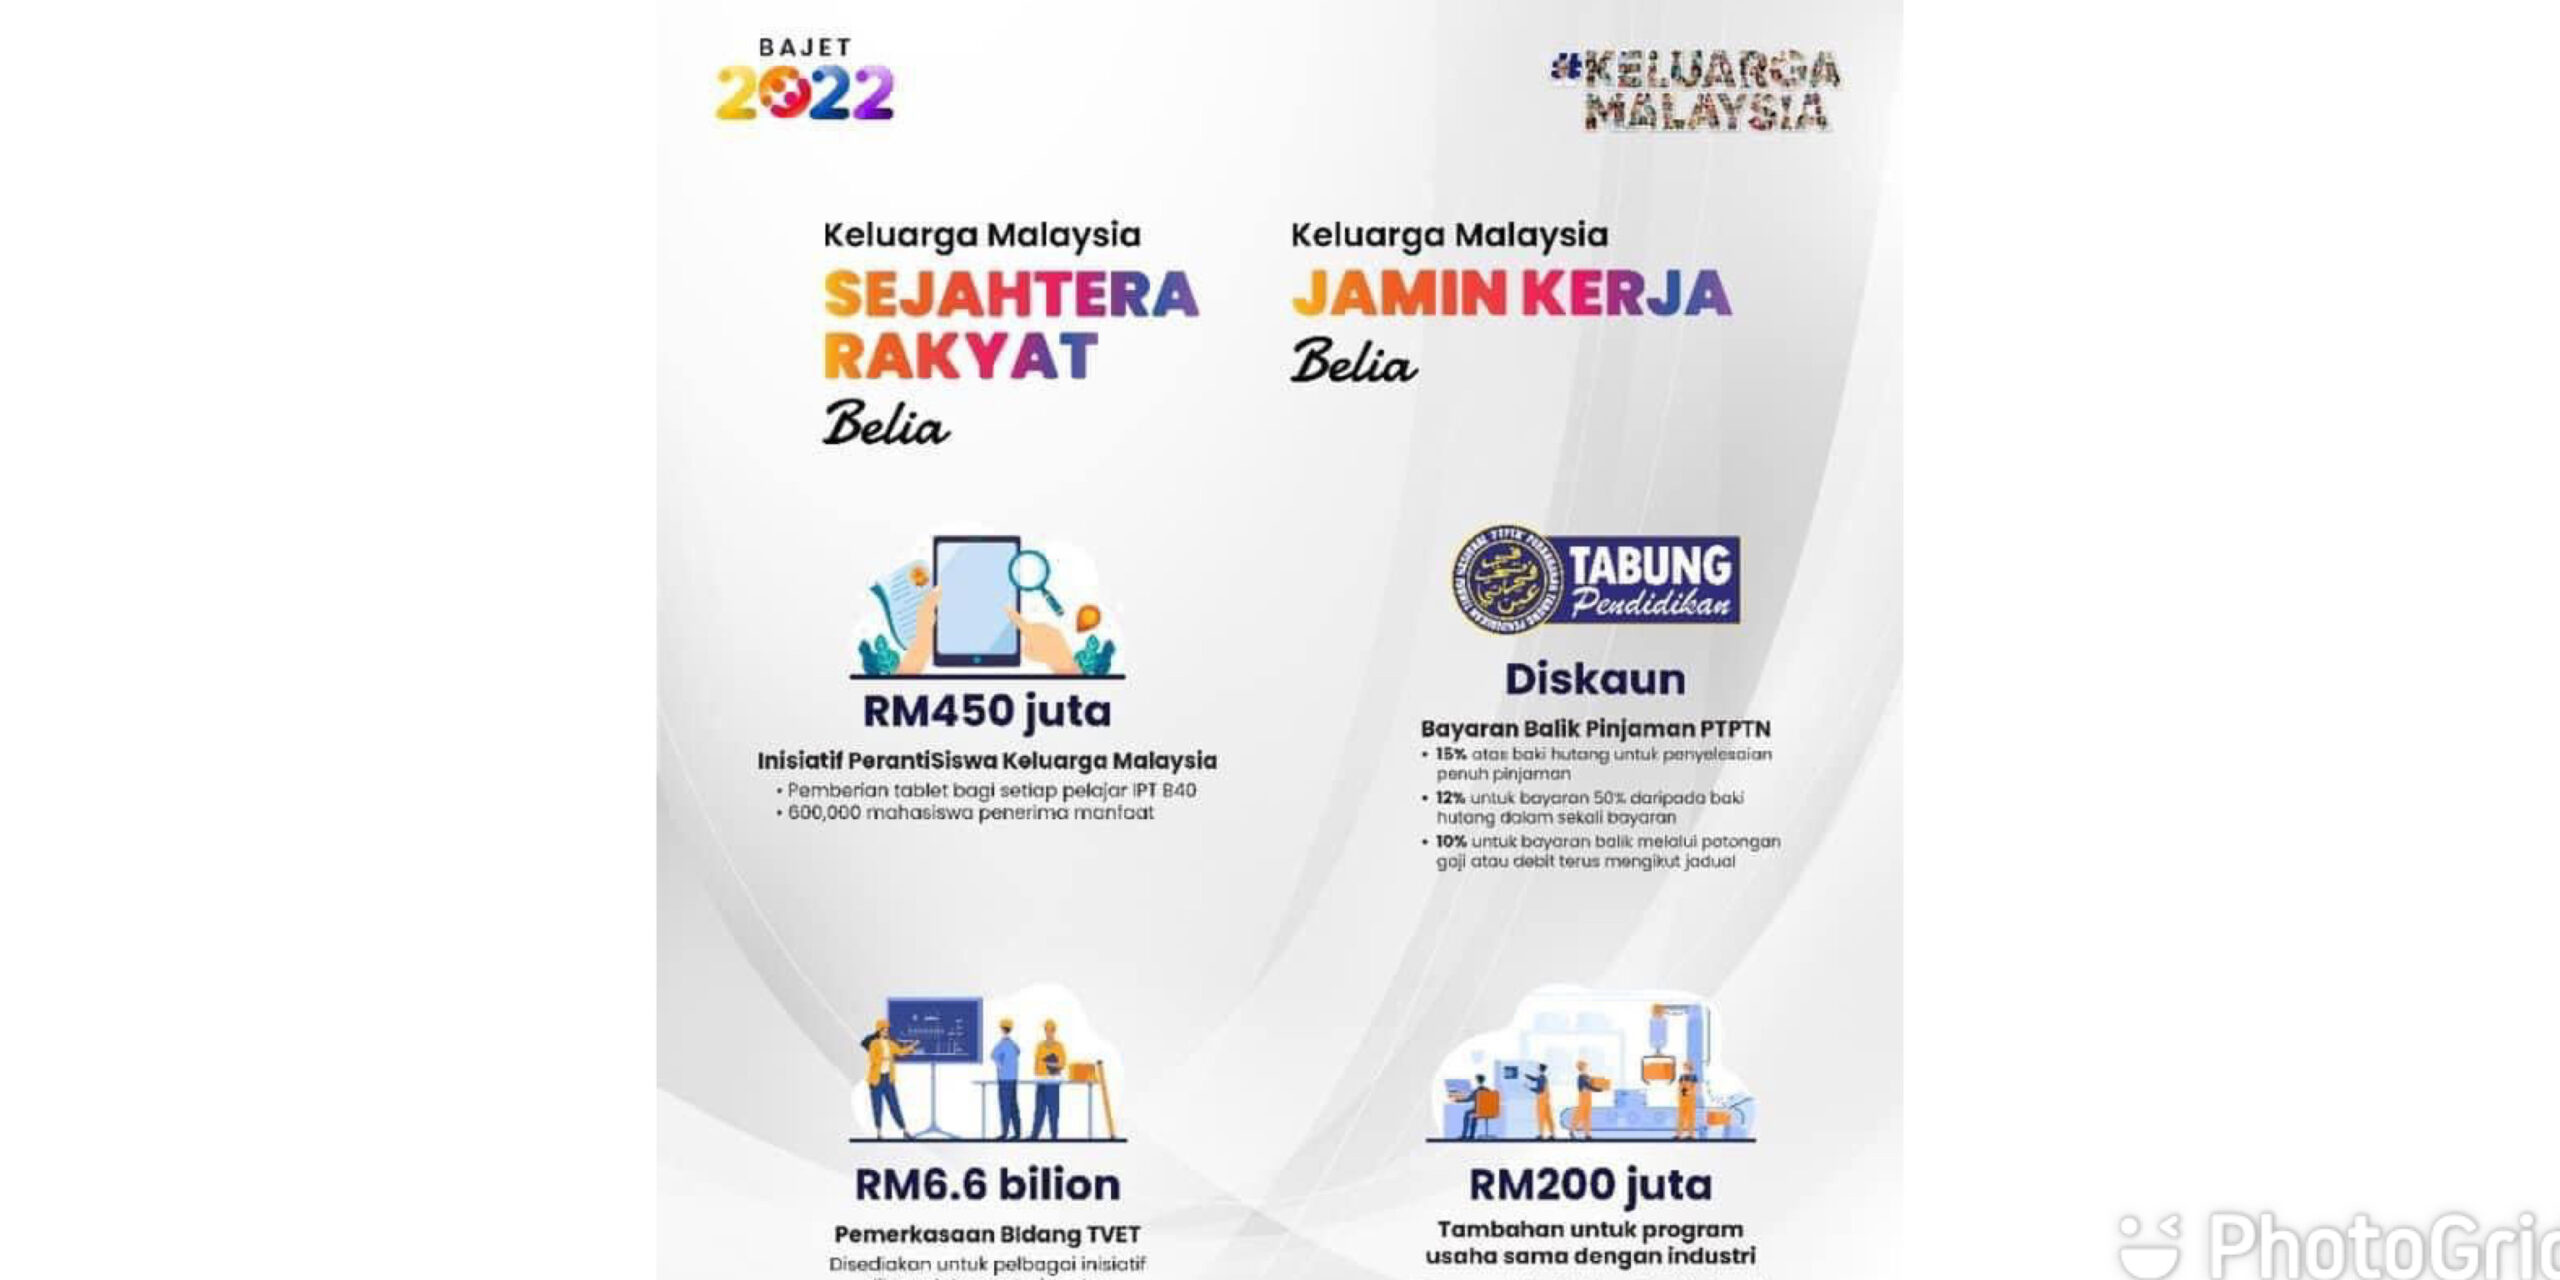 Bajet 2022 malaysia